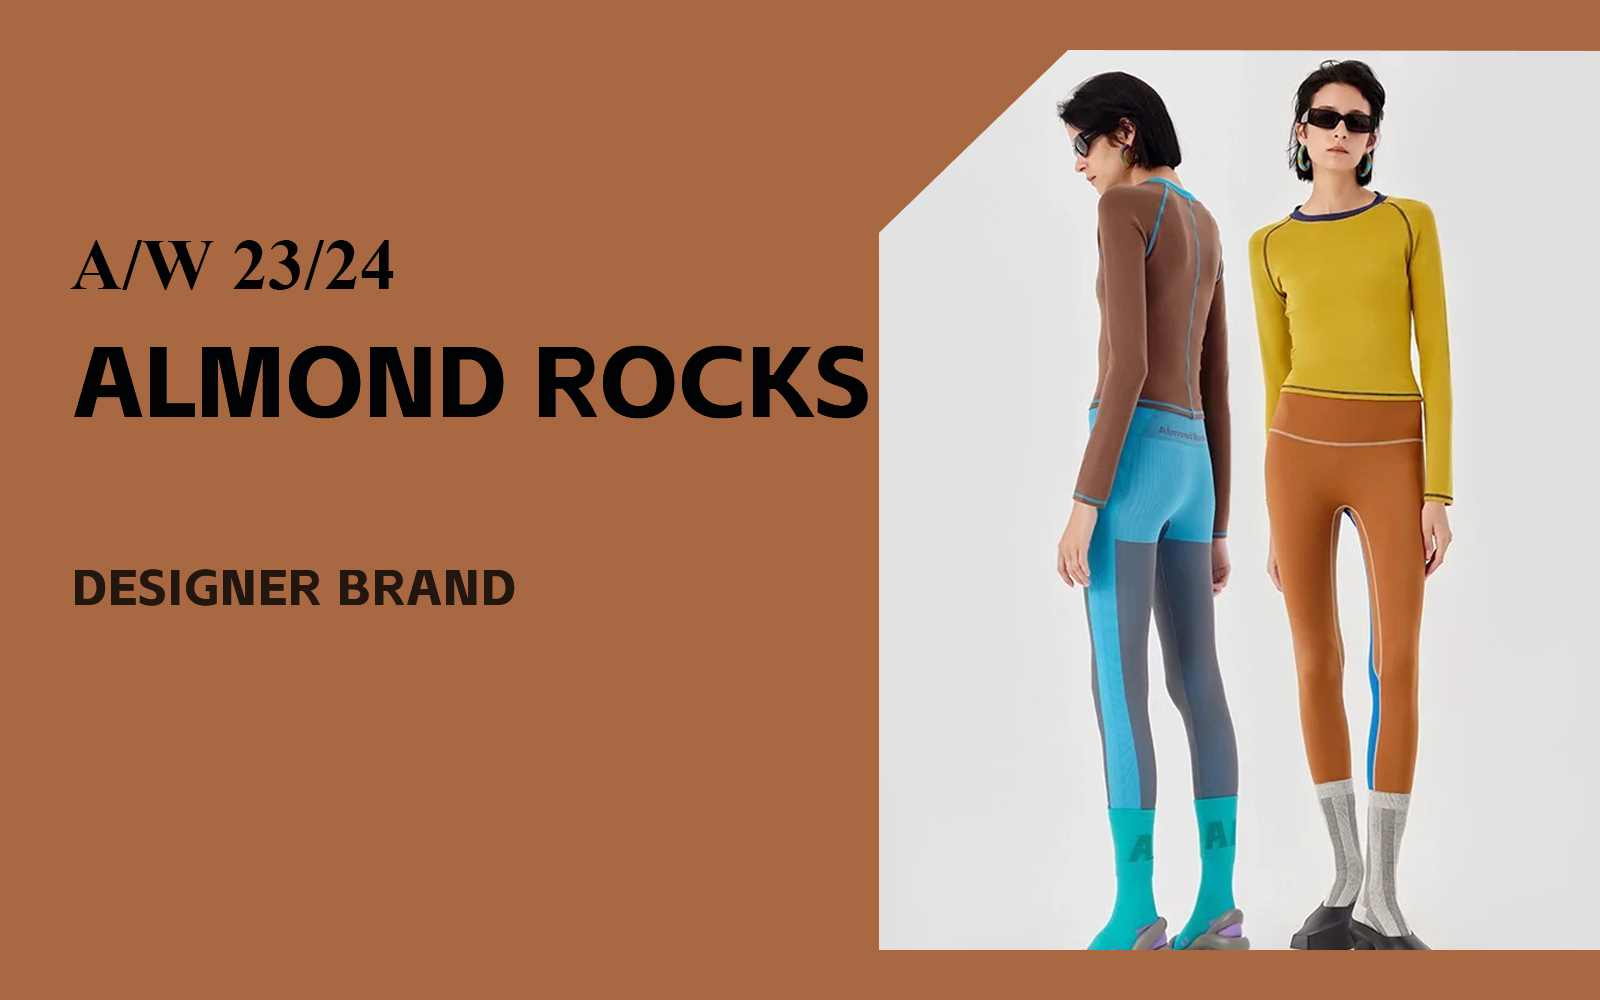 The Analysis of ALMOND ROCKS The Underwear Designer Brand